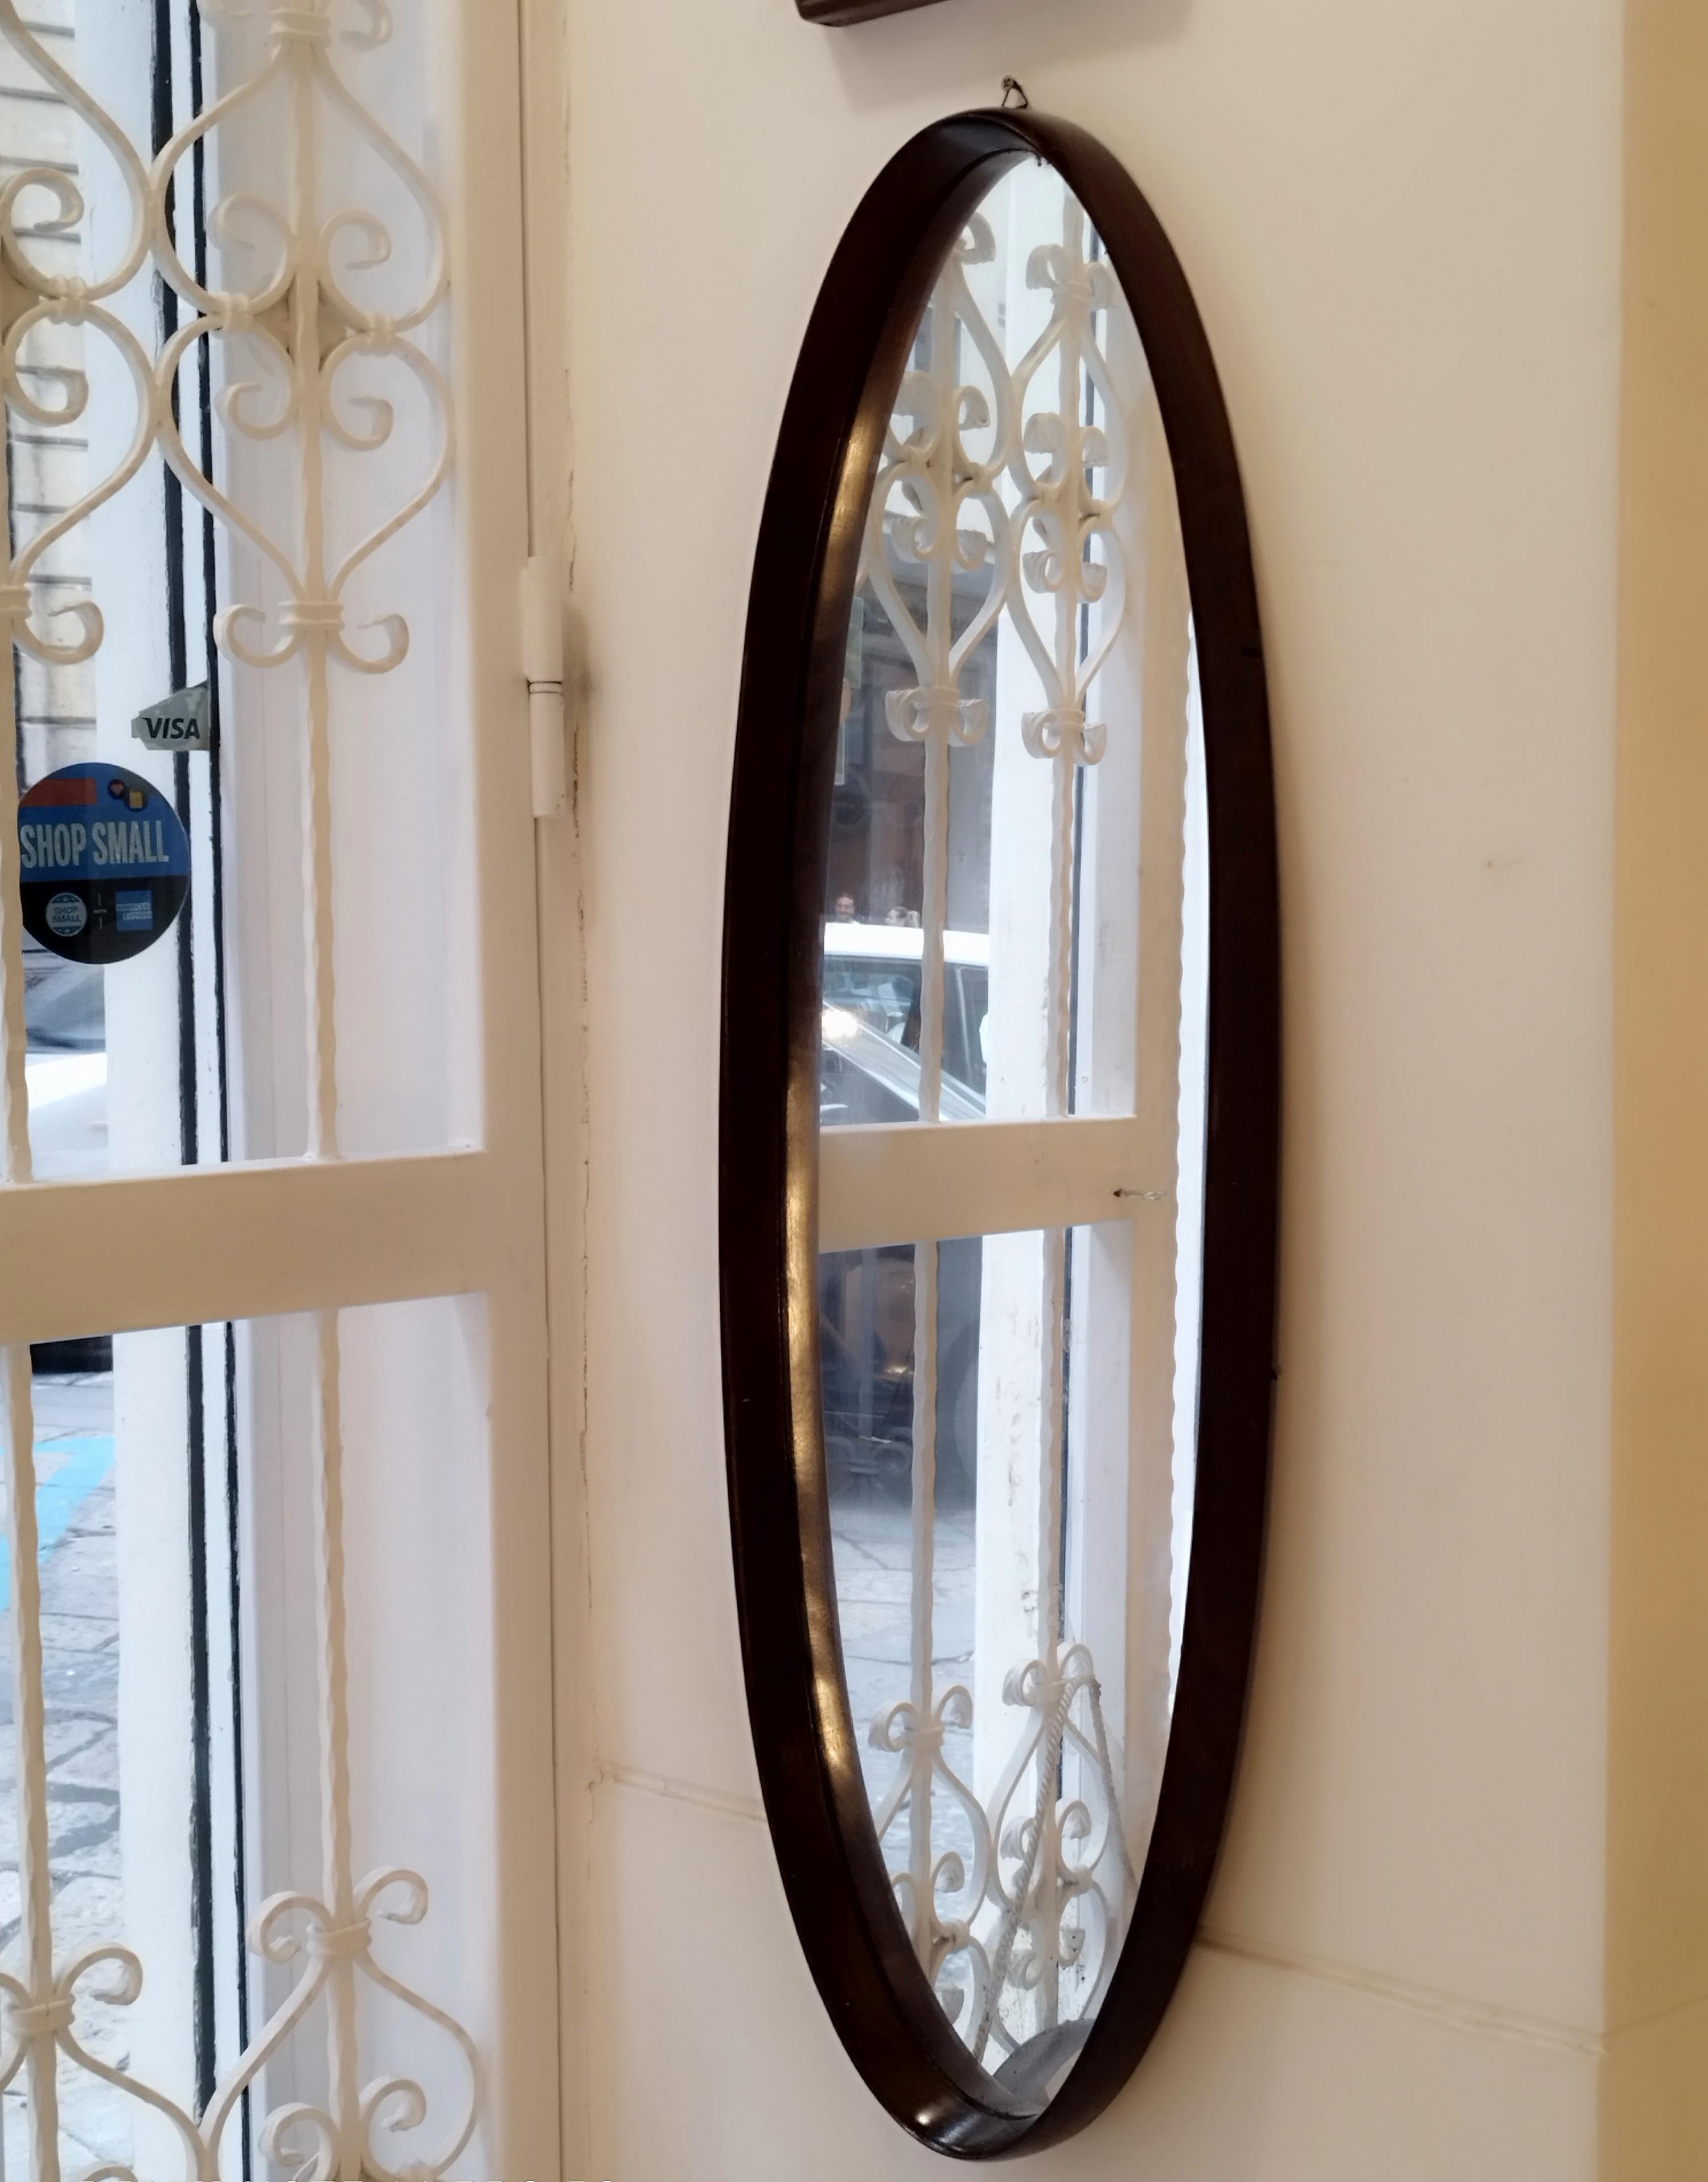 Grand miroir ovale avec cadre en bois incurvé, fabriqué en Italie dans les années 1960. Panneau arrière en bois.
Bon état général, quelques marques dues à une utilisation normale au fil du temps.